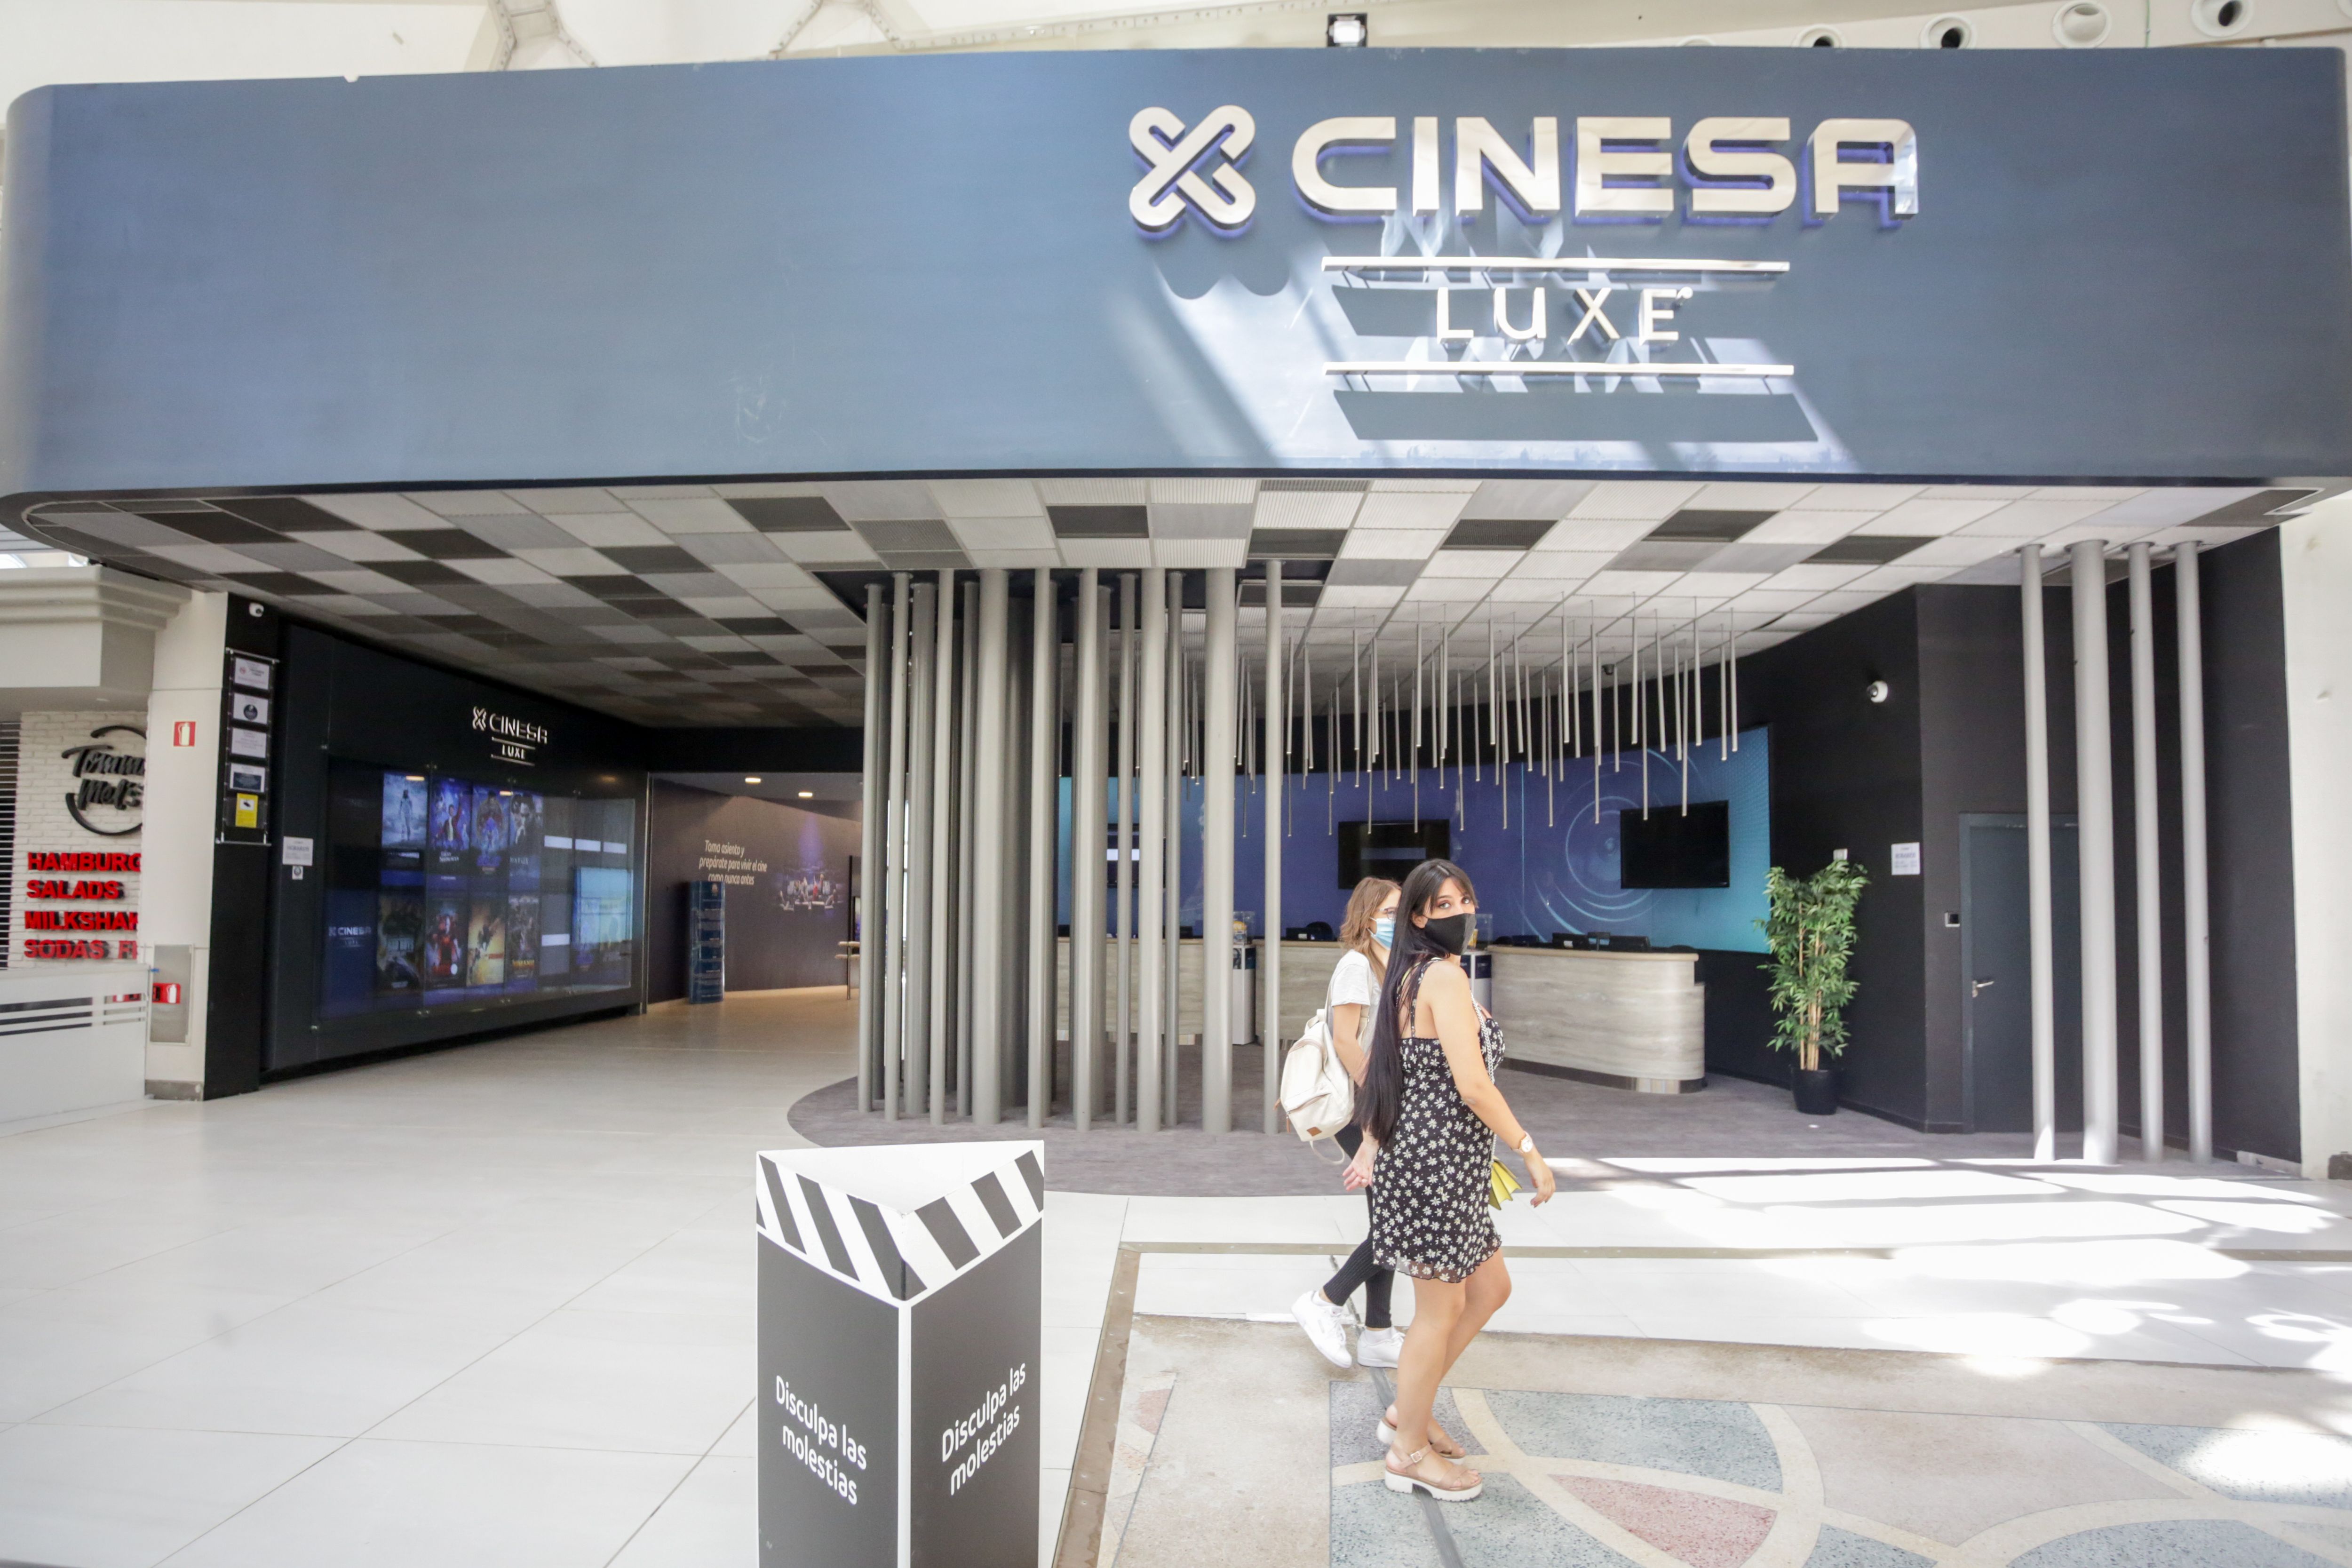  Al cine, a precio reducido: Cinesa lanza un descuento para los mayores de 65 años